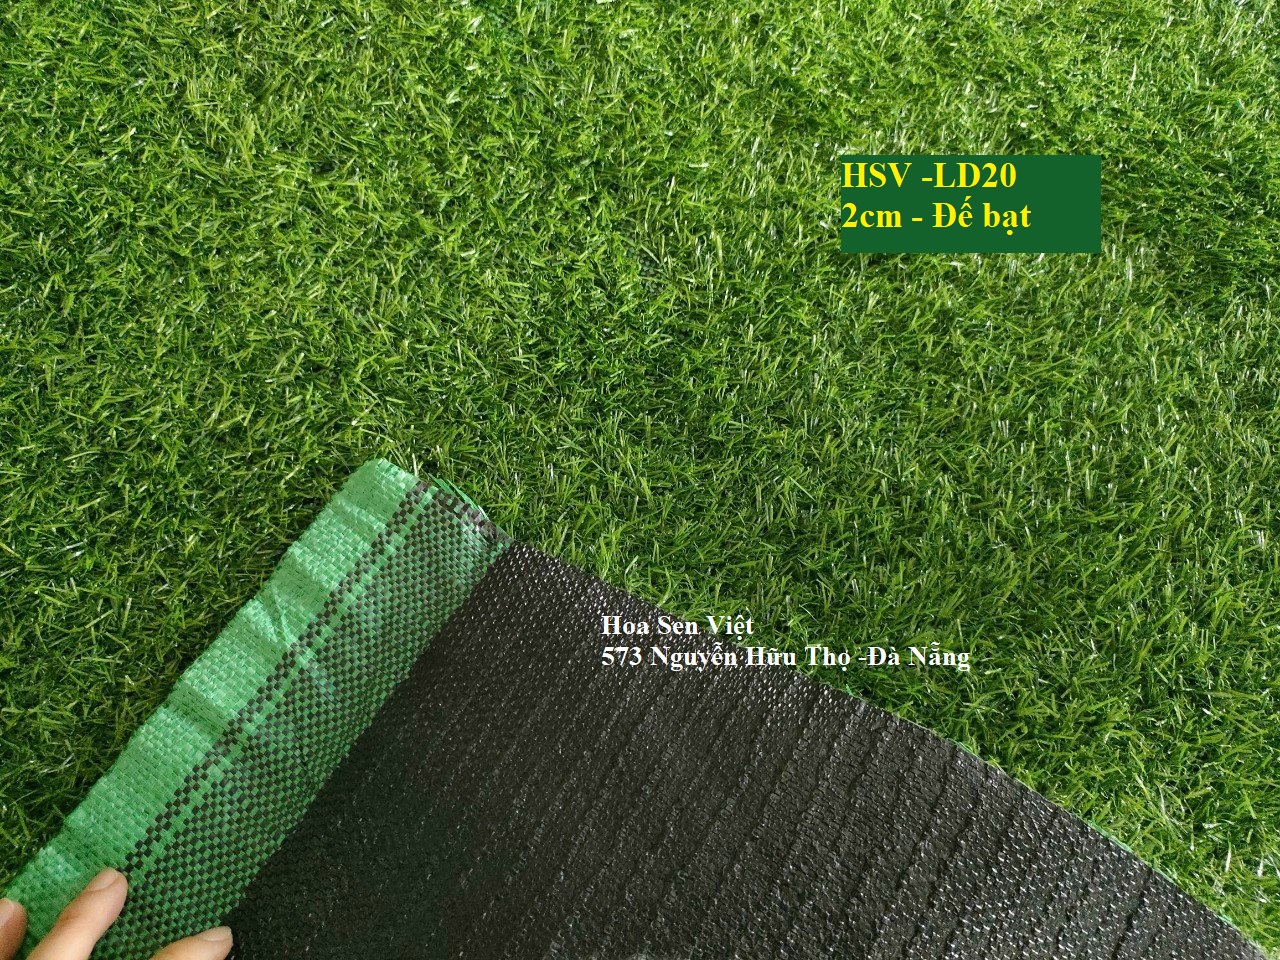 Thảm cỏ 2cm đế bạt nhựa - Cửa hàng cỏ nhân tạo Đà Nẵng -Hoa Sen Việt